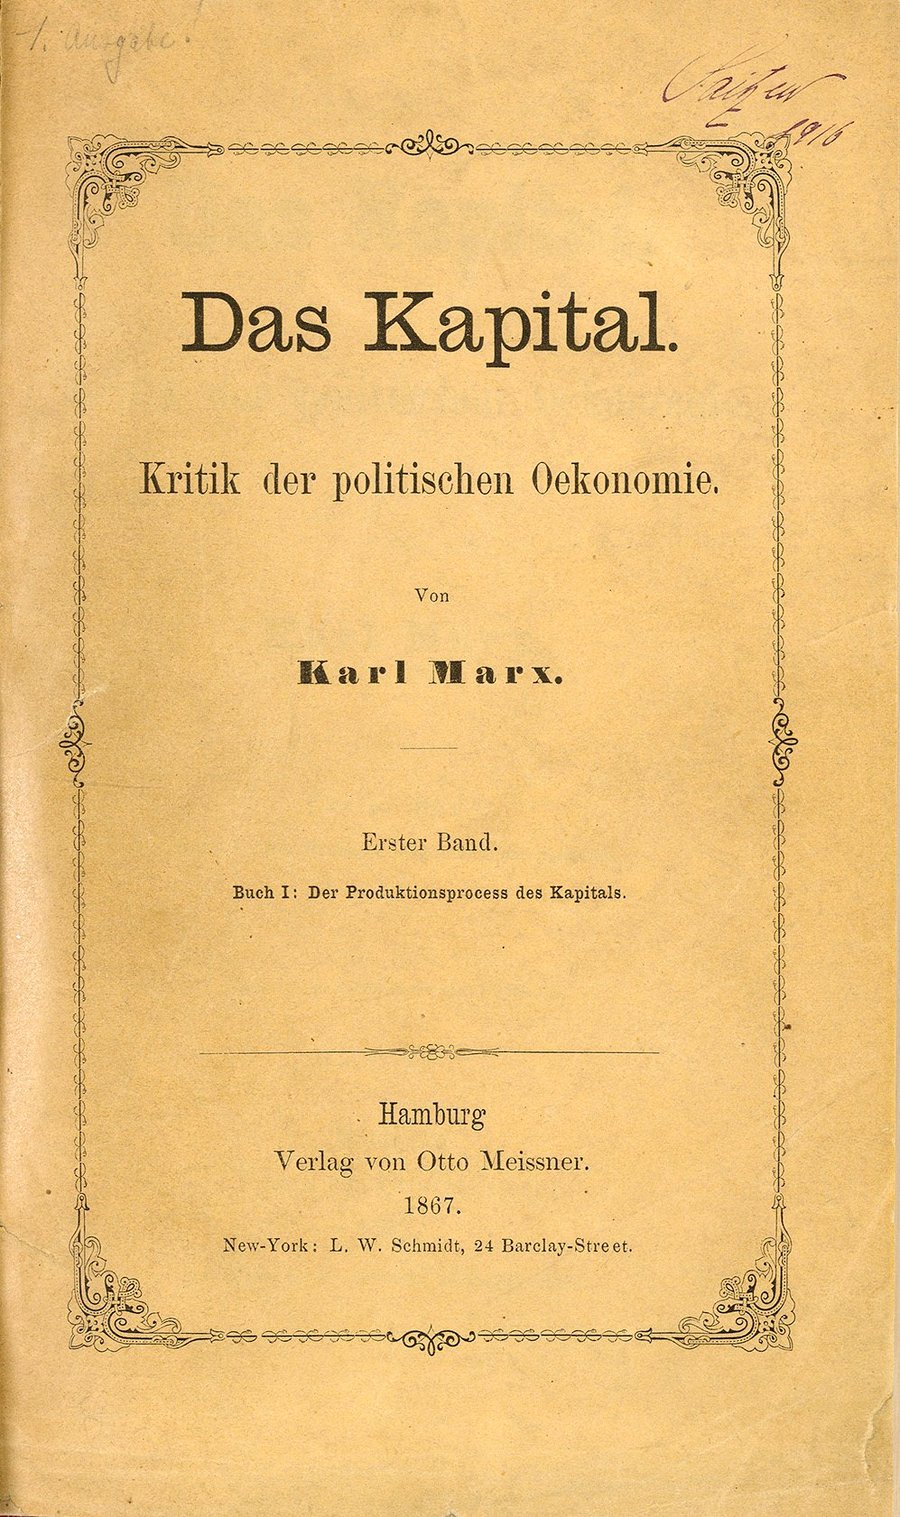 הקָפּיטָל, ביקורת הכלכלה המדינית שכתב קרל מרקס המהווה את הבסיס לחשיבה הסוציאליסטית-מרקסיסטית, ואשר השפיע על רבים בכל הזמנים